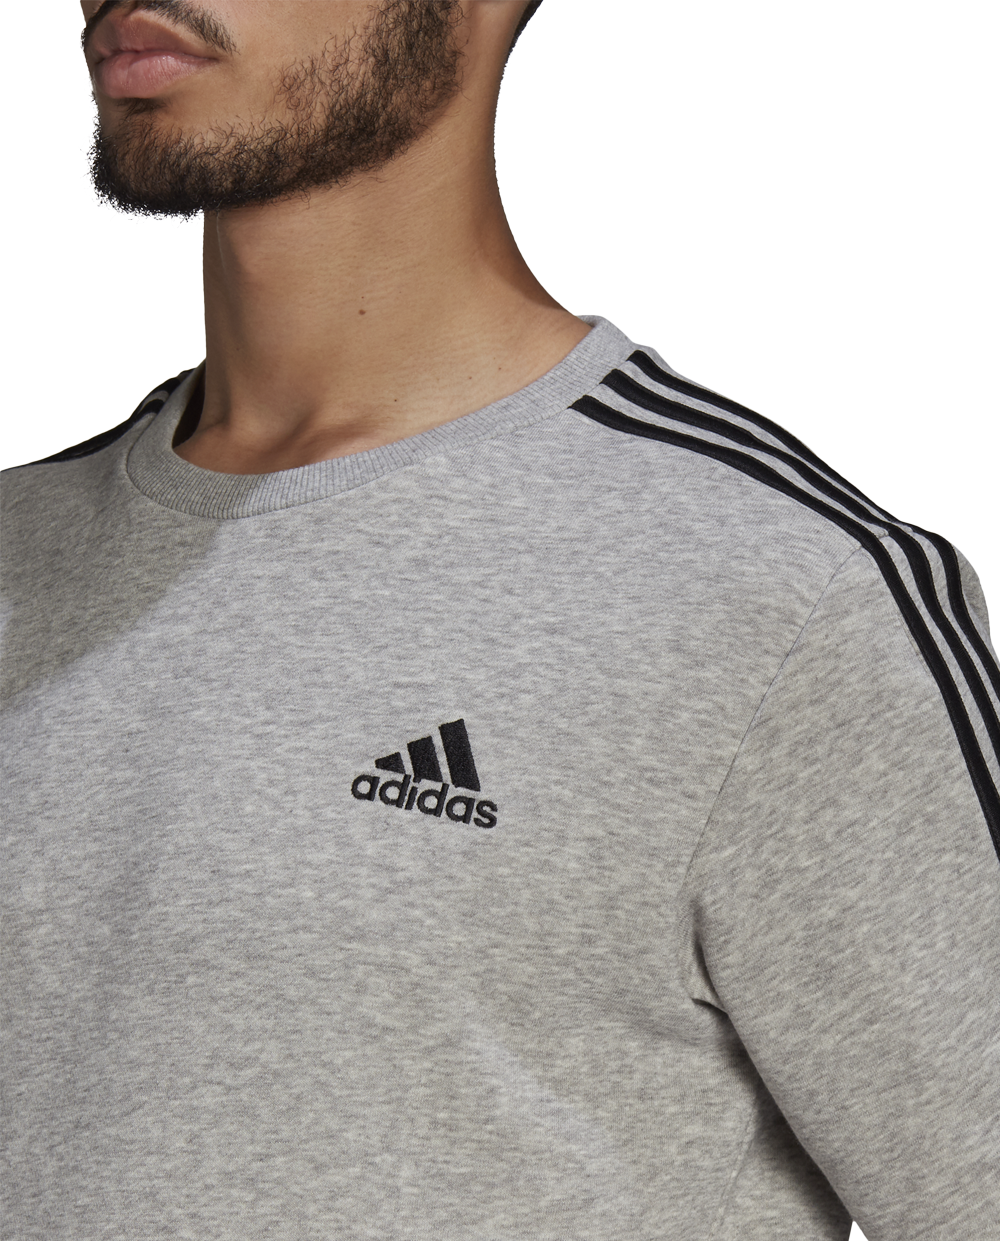 Sweatshirt Adidas Cinza com Preto